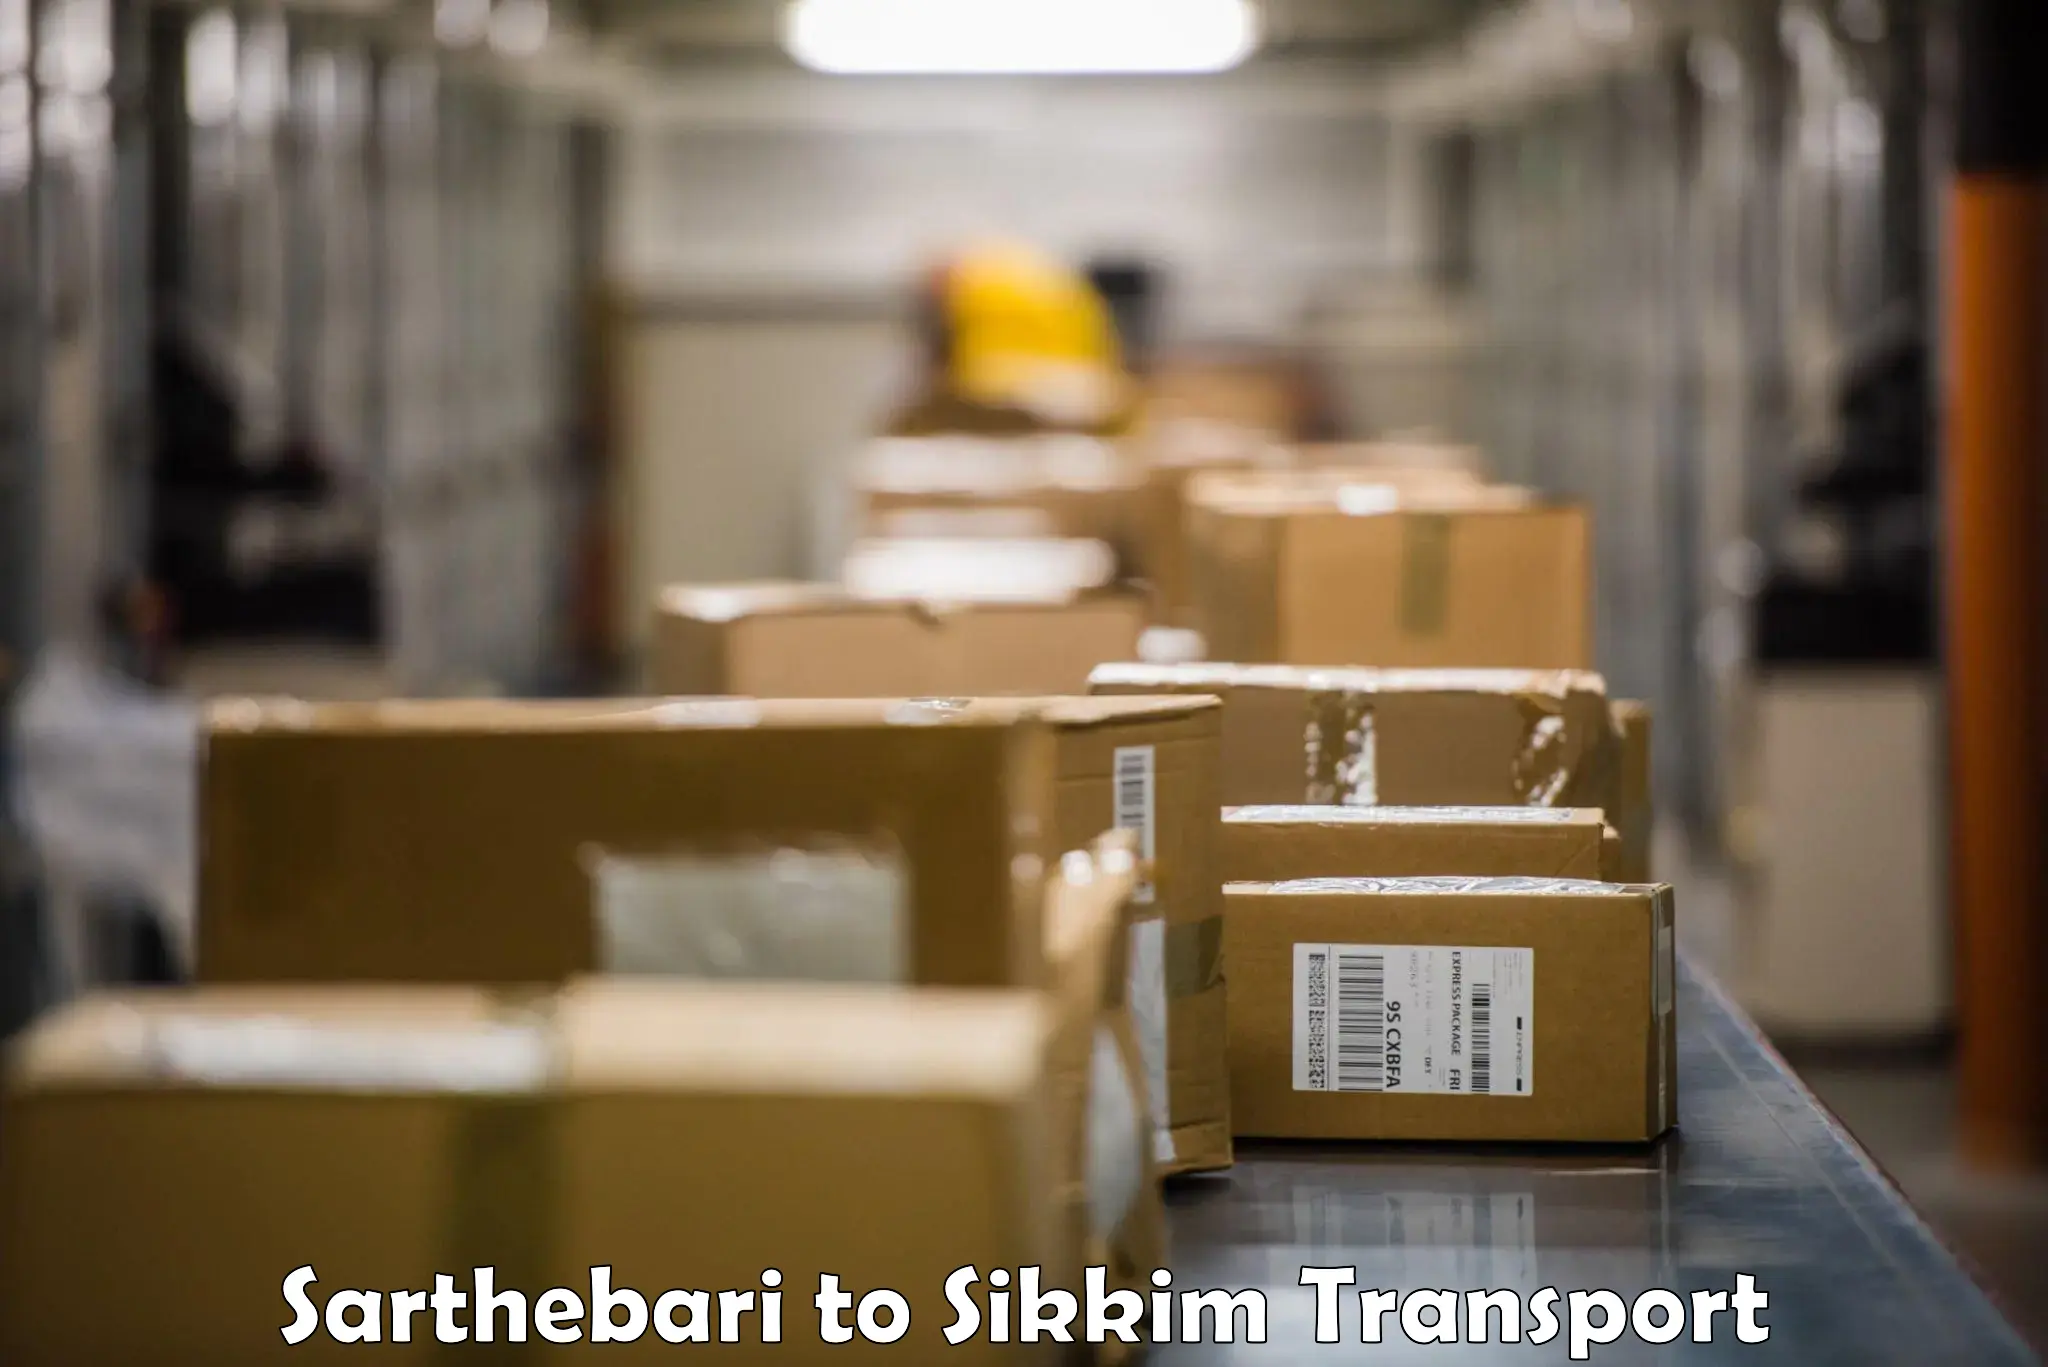 Shipping partner Sarthebari to East Sikkim